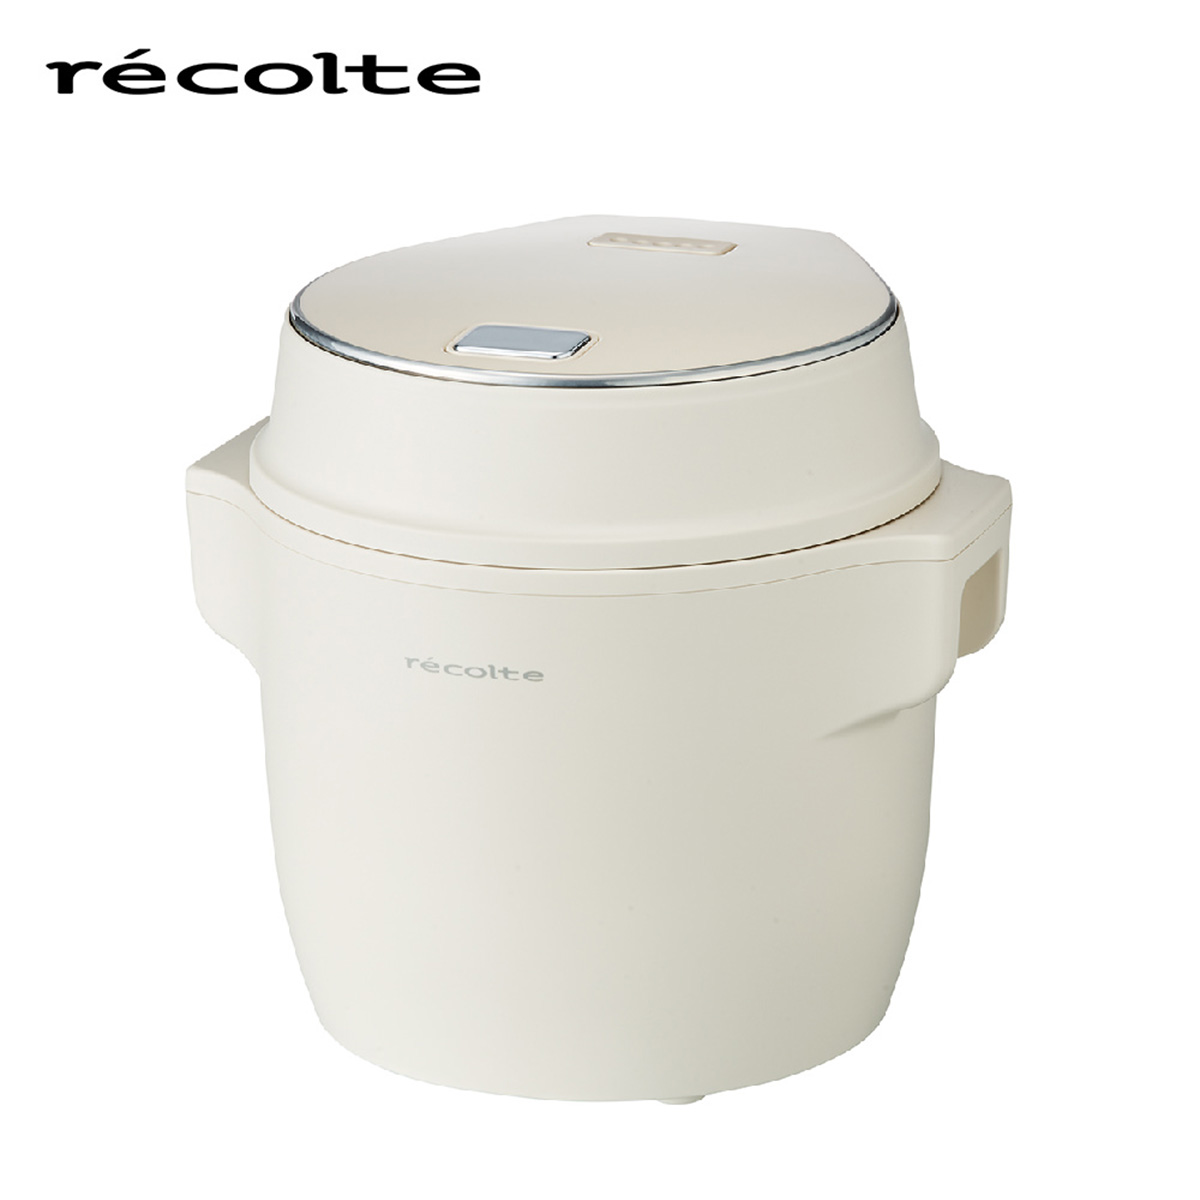 recolte(レコルト) コンパクトライスクッカー ホワイト RCR-1(W)